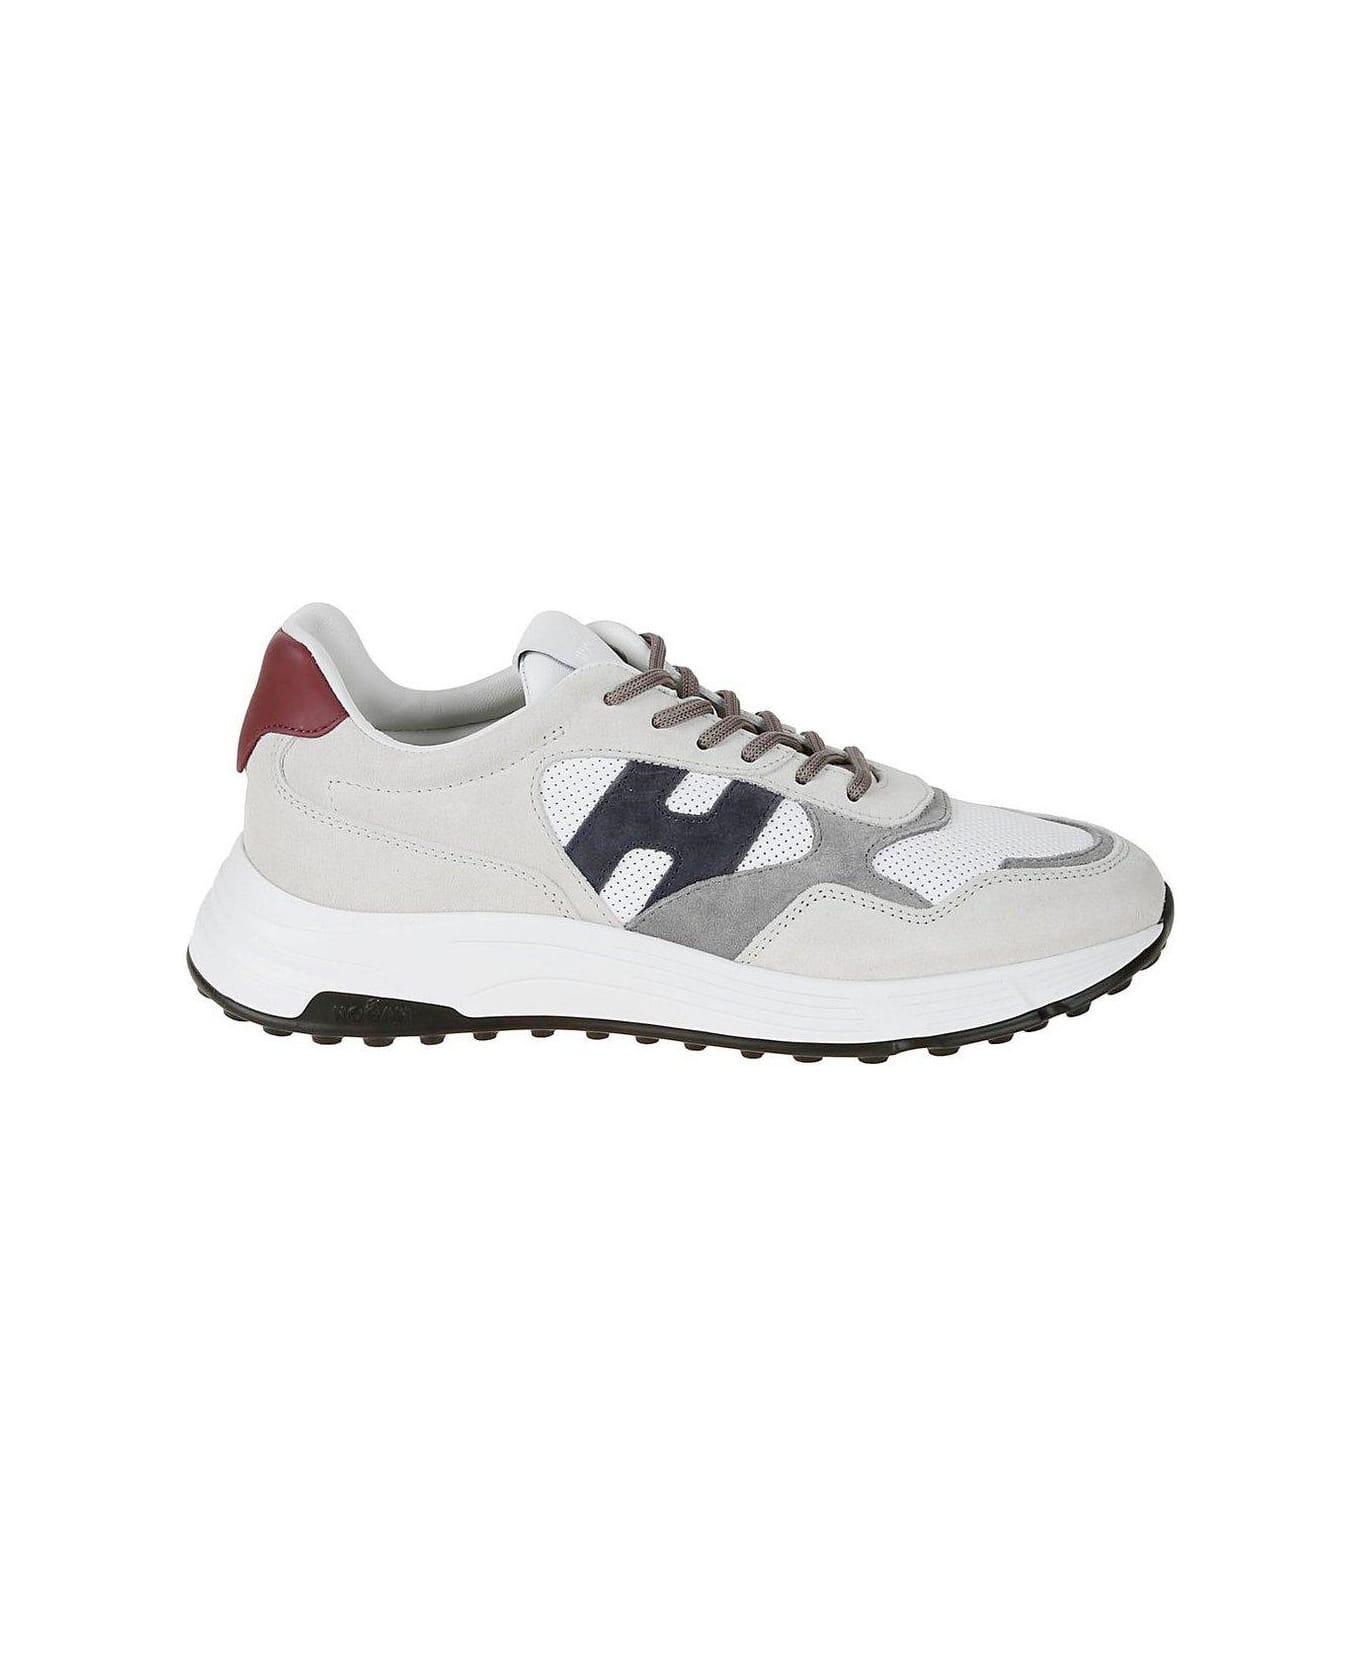 Hogan Hyperlight Low-top Sneakers - N bianco/blu スニーカー